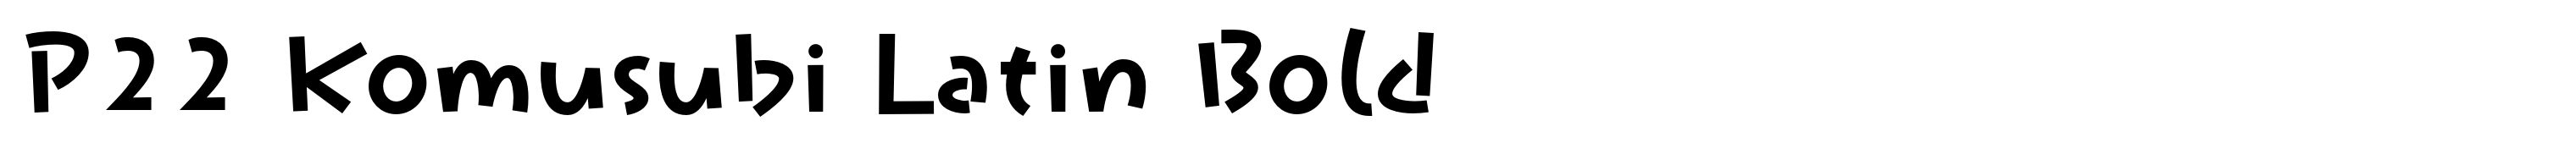 P22 Komusubi Latin Bold